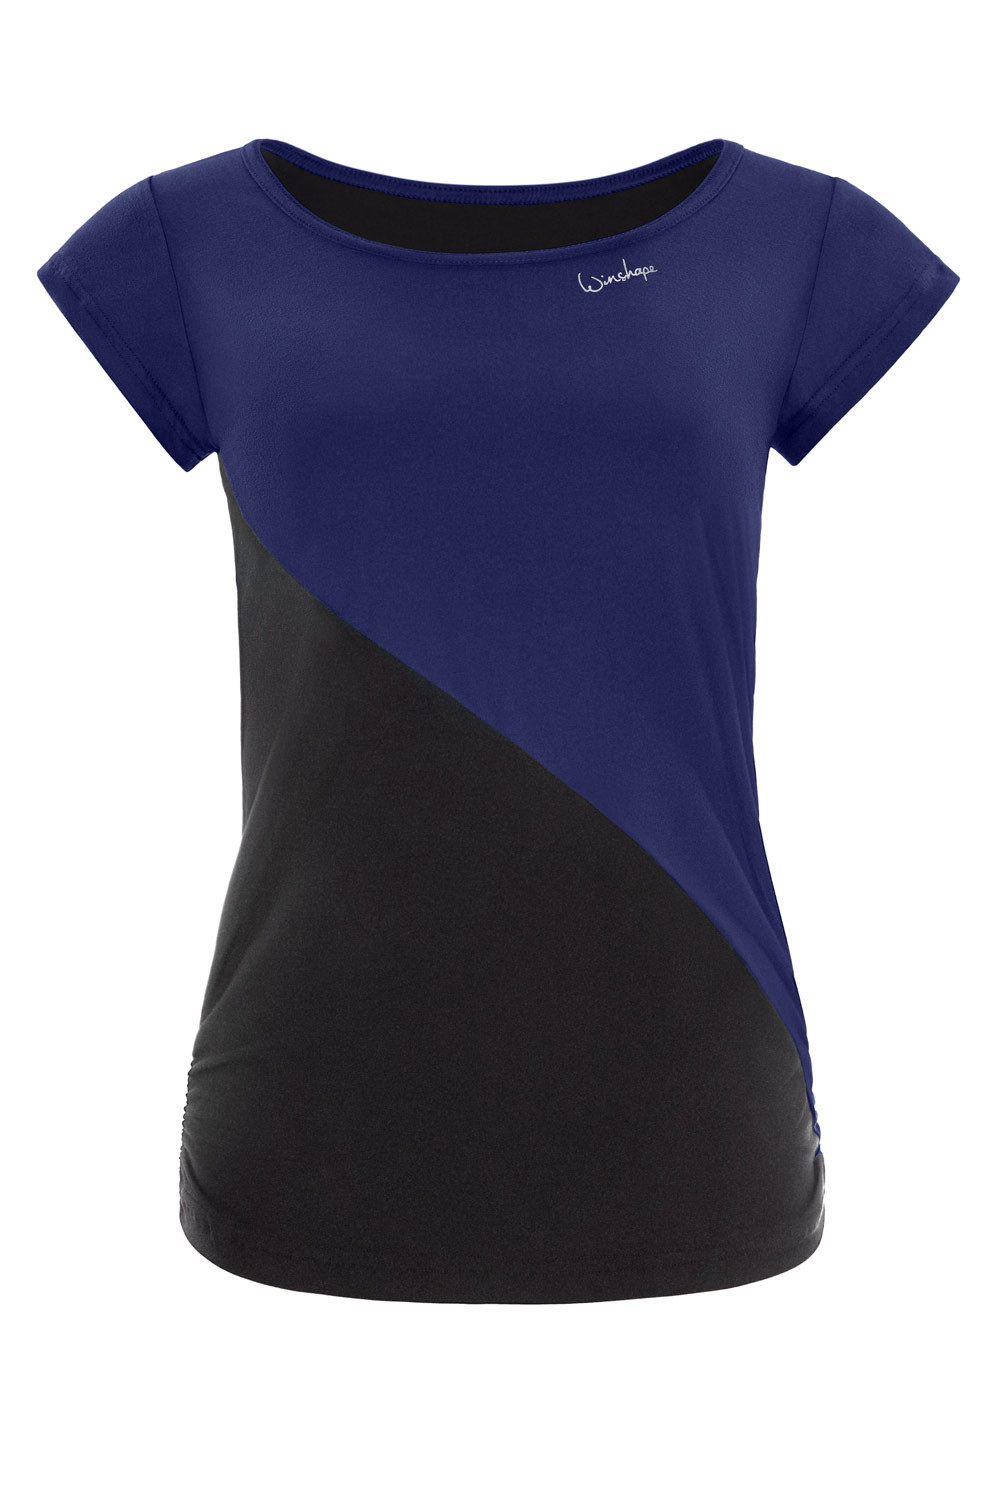 Functional Light and Soft dark Soft blue/schwarz, Winshape Ultra AET109LS, Style Kurzarmshirt